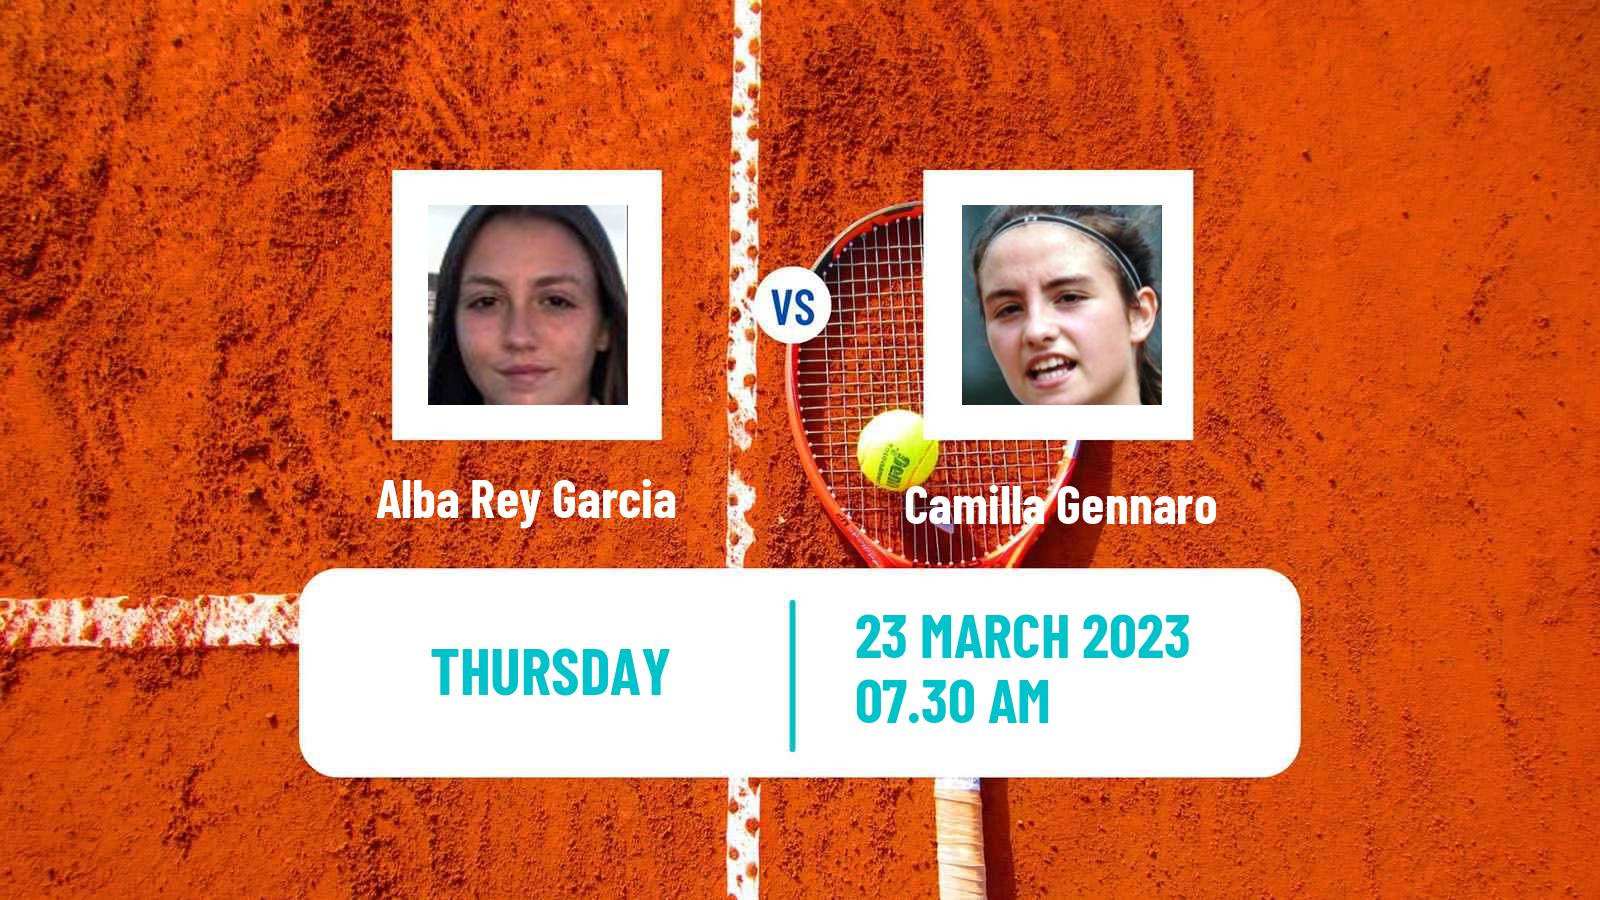 Tennis ITF Tournaments Alba Rey Garcia - Camilla Gennaro